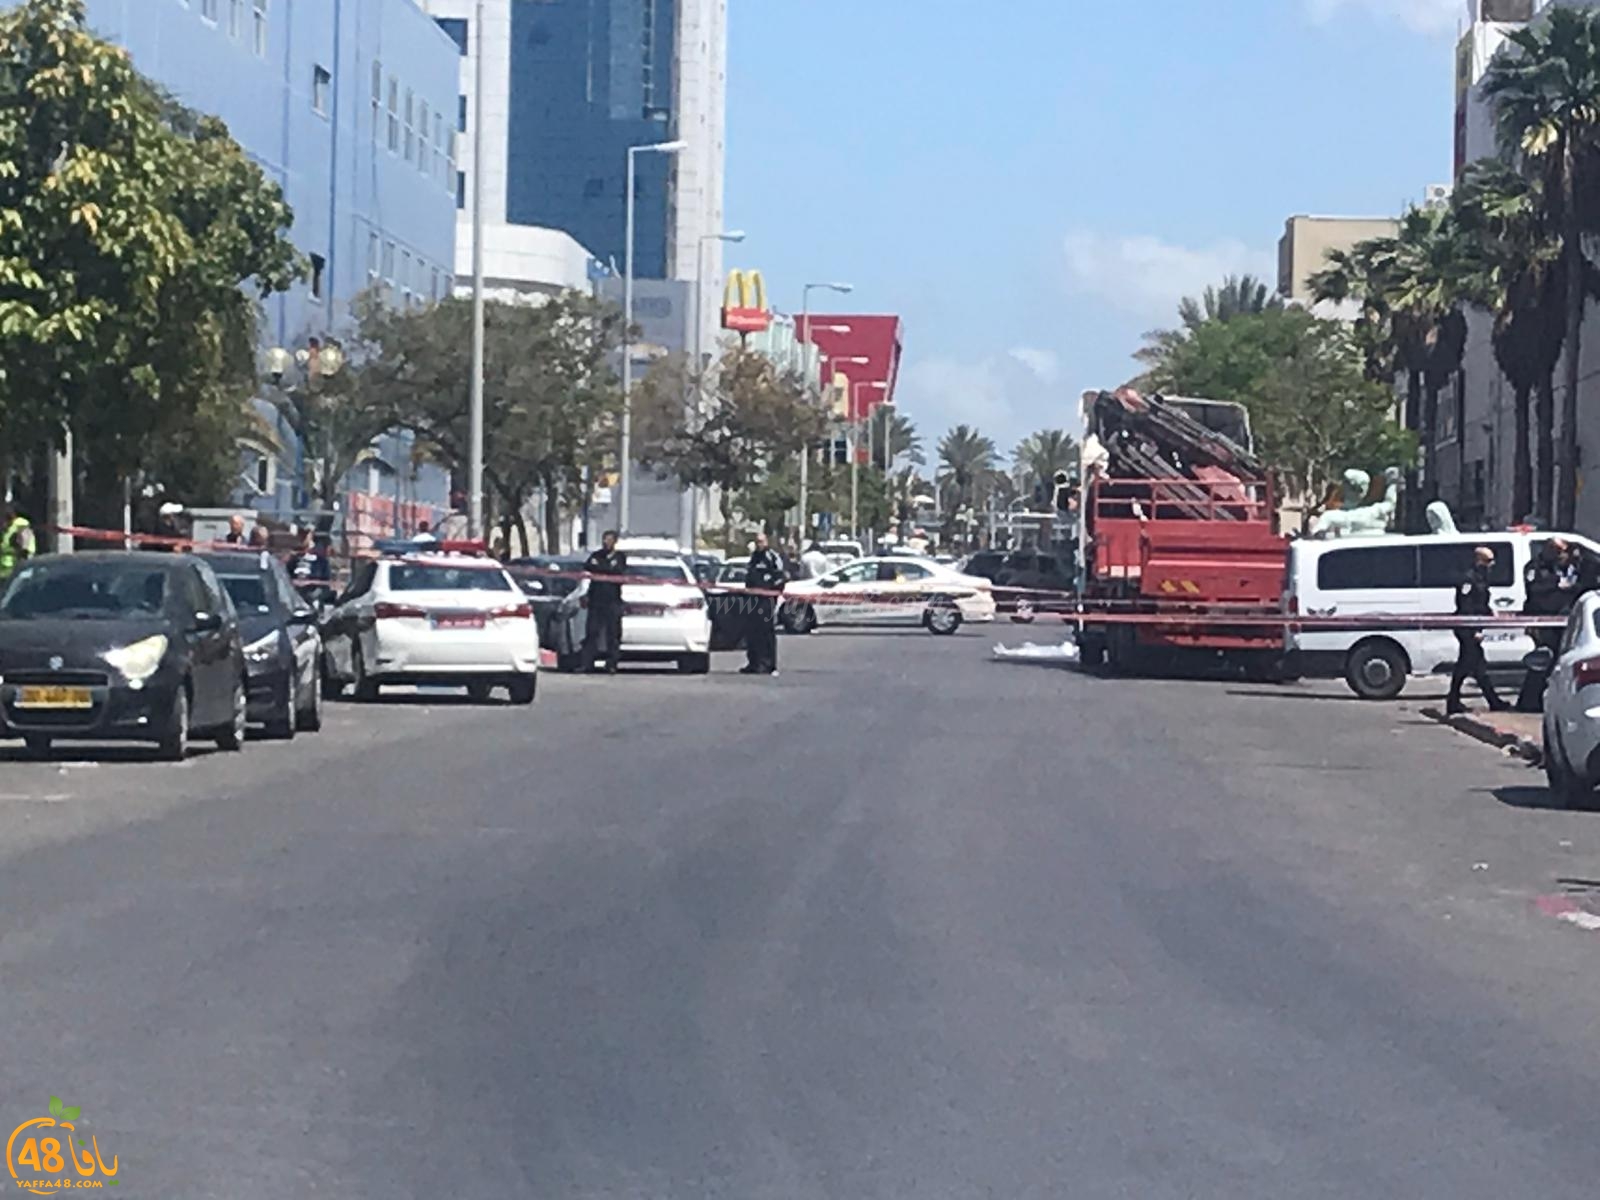  مصرع سيدة اثر دهسها من قبل شاحنة جنوب يافا 